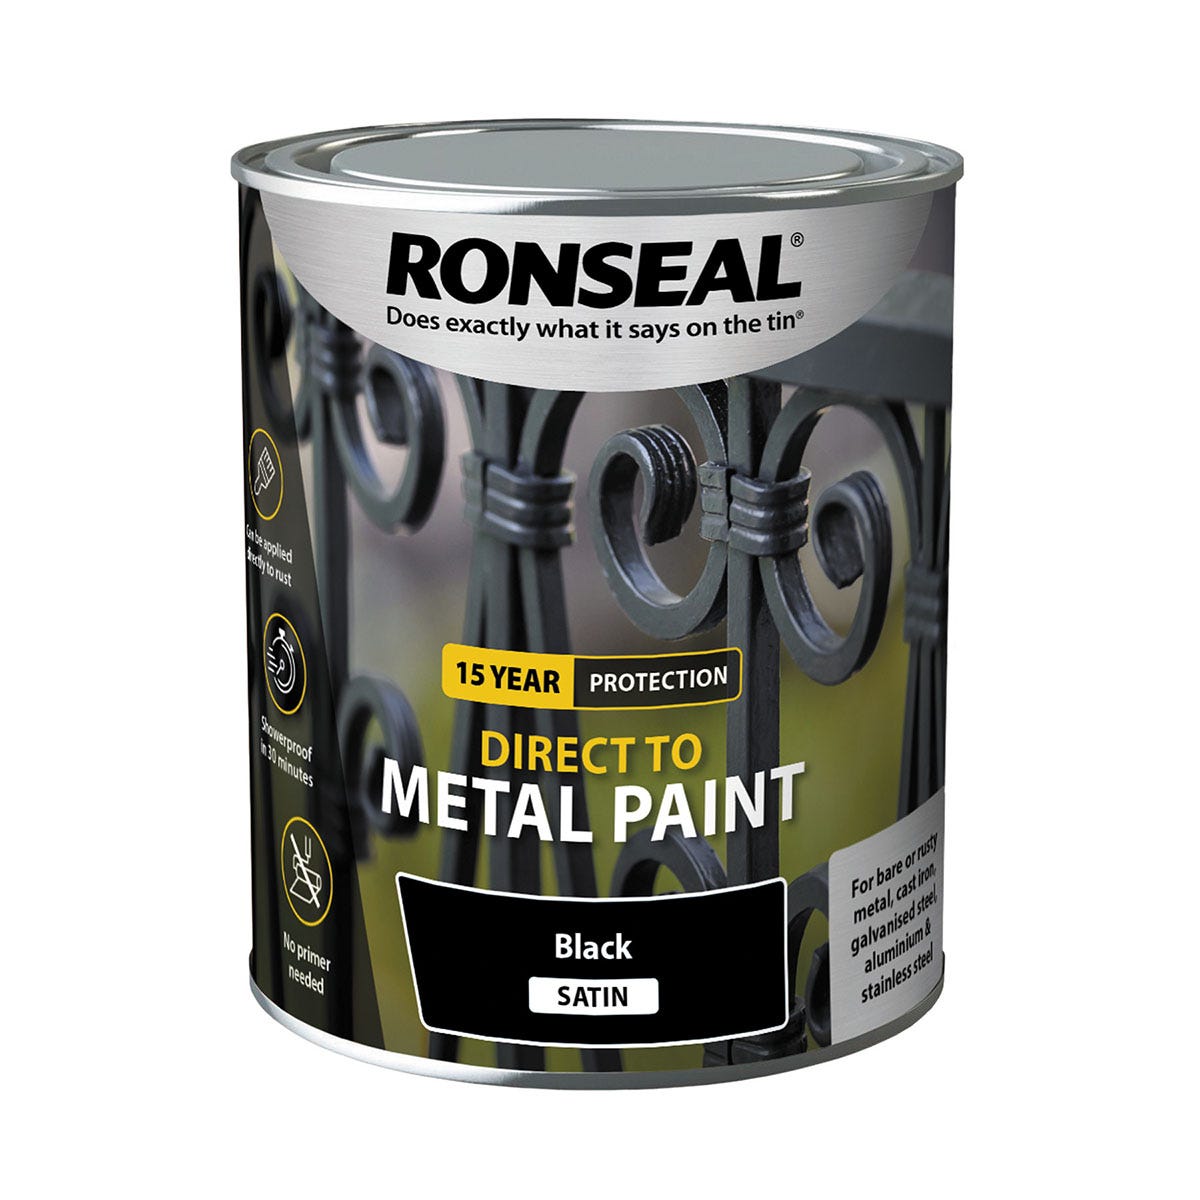 Ronseal Direct to Metal Paint - Black Satin, 750ml